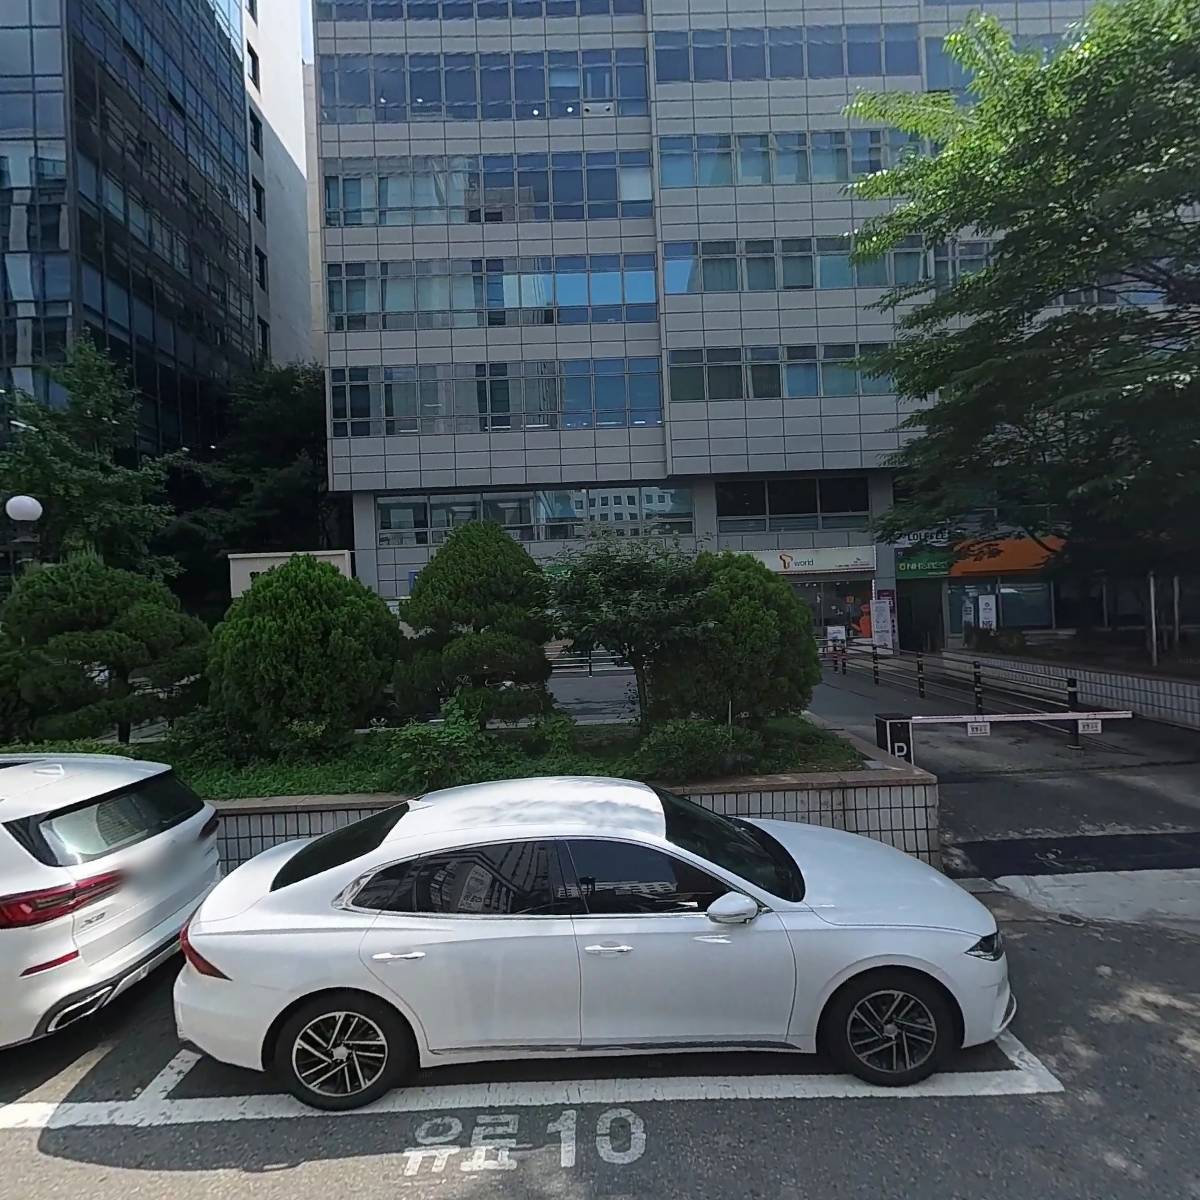 유비이 머시너리 주식회사(UBE MACHINERY CORPORATION, Ltd.) 서울지점